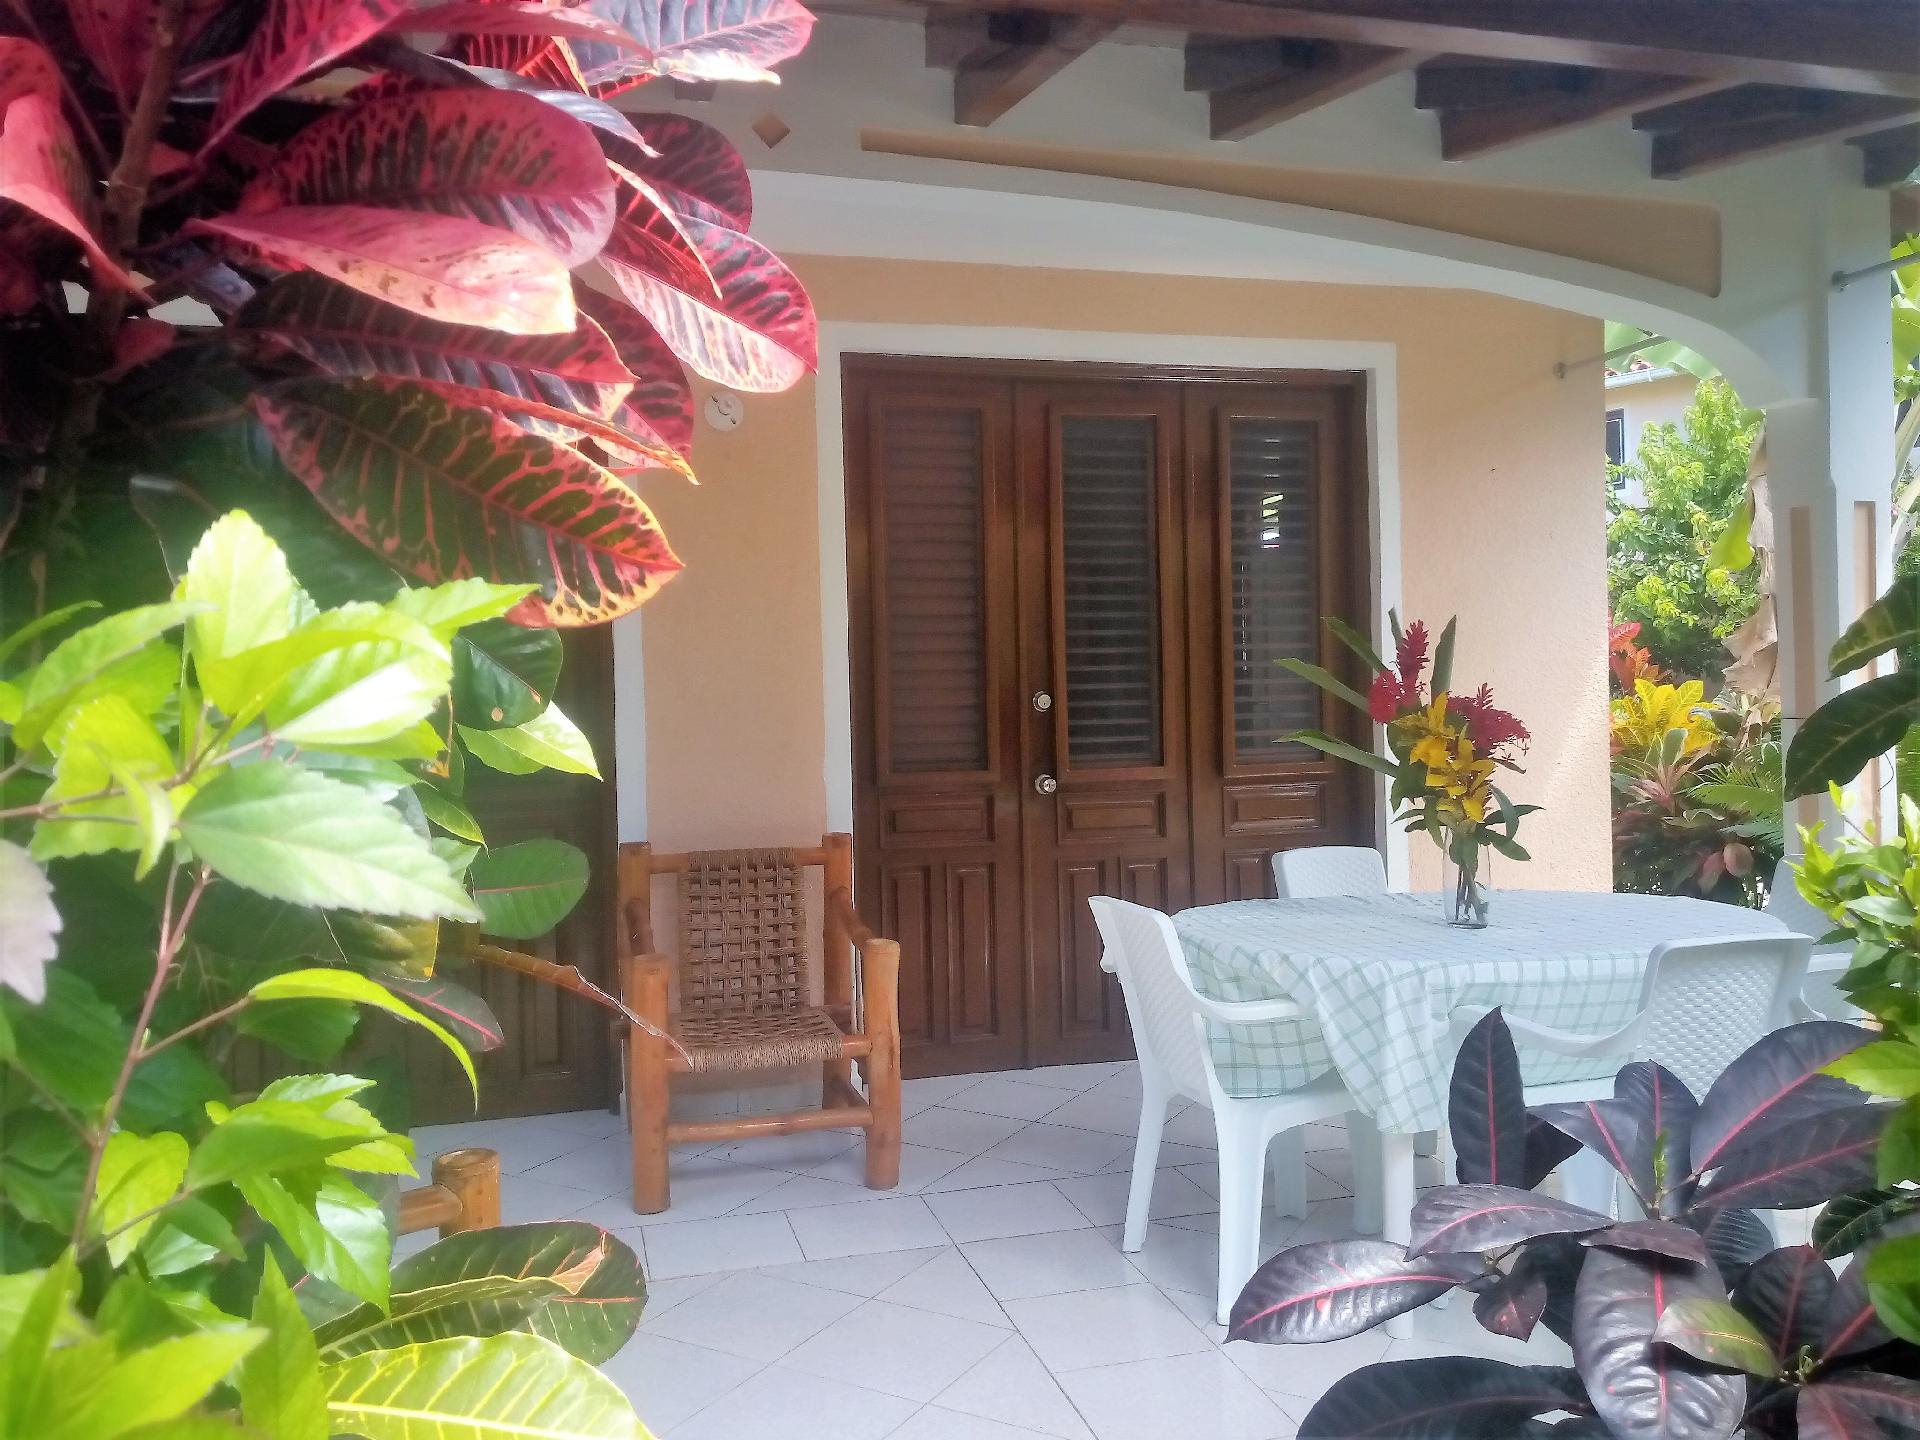 Ferienwohnung für 2 Personen ca. 60 m² i Ferienhaus in Mittelamerika und Karibik